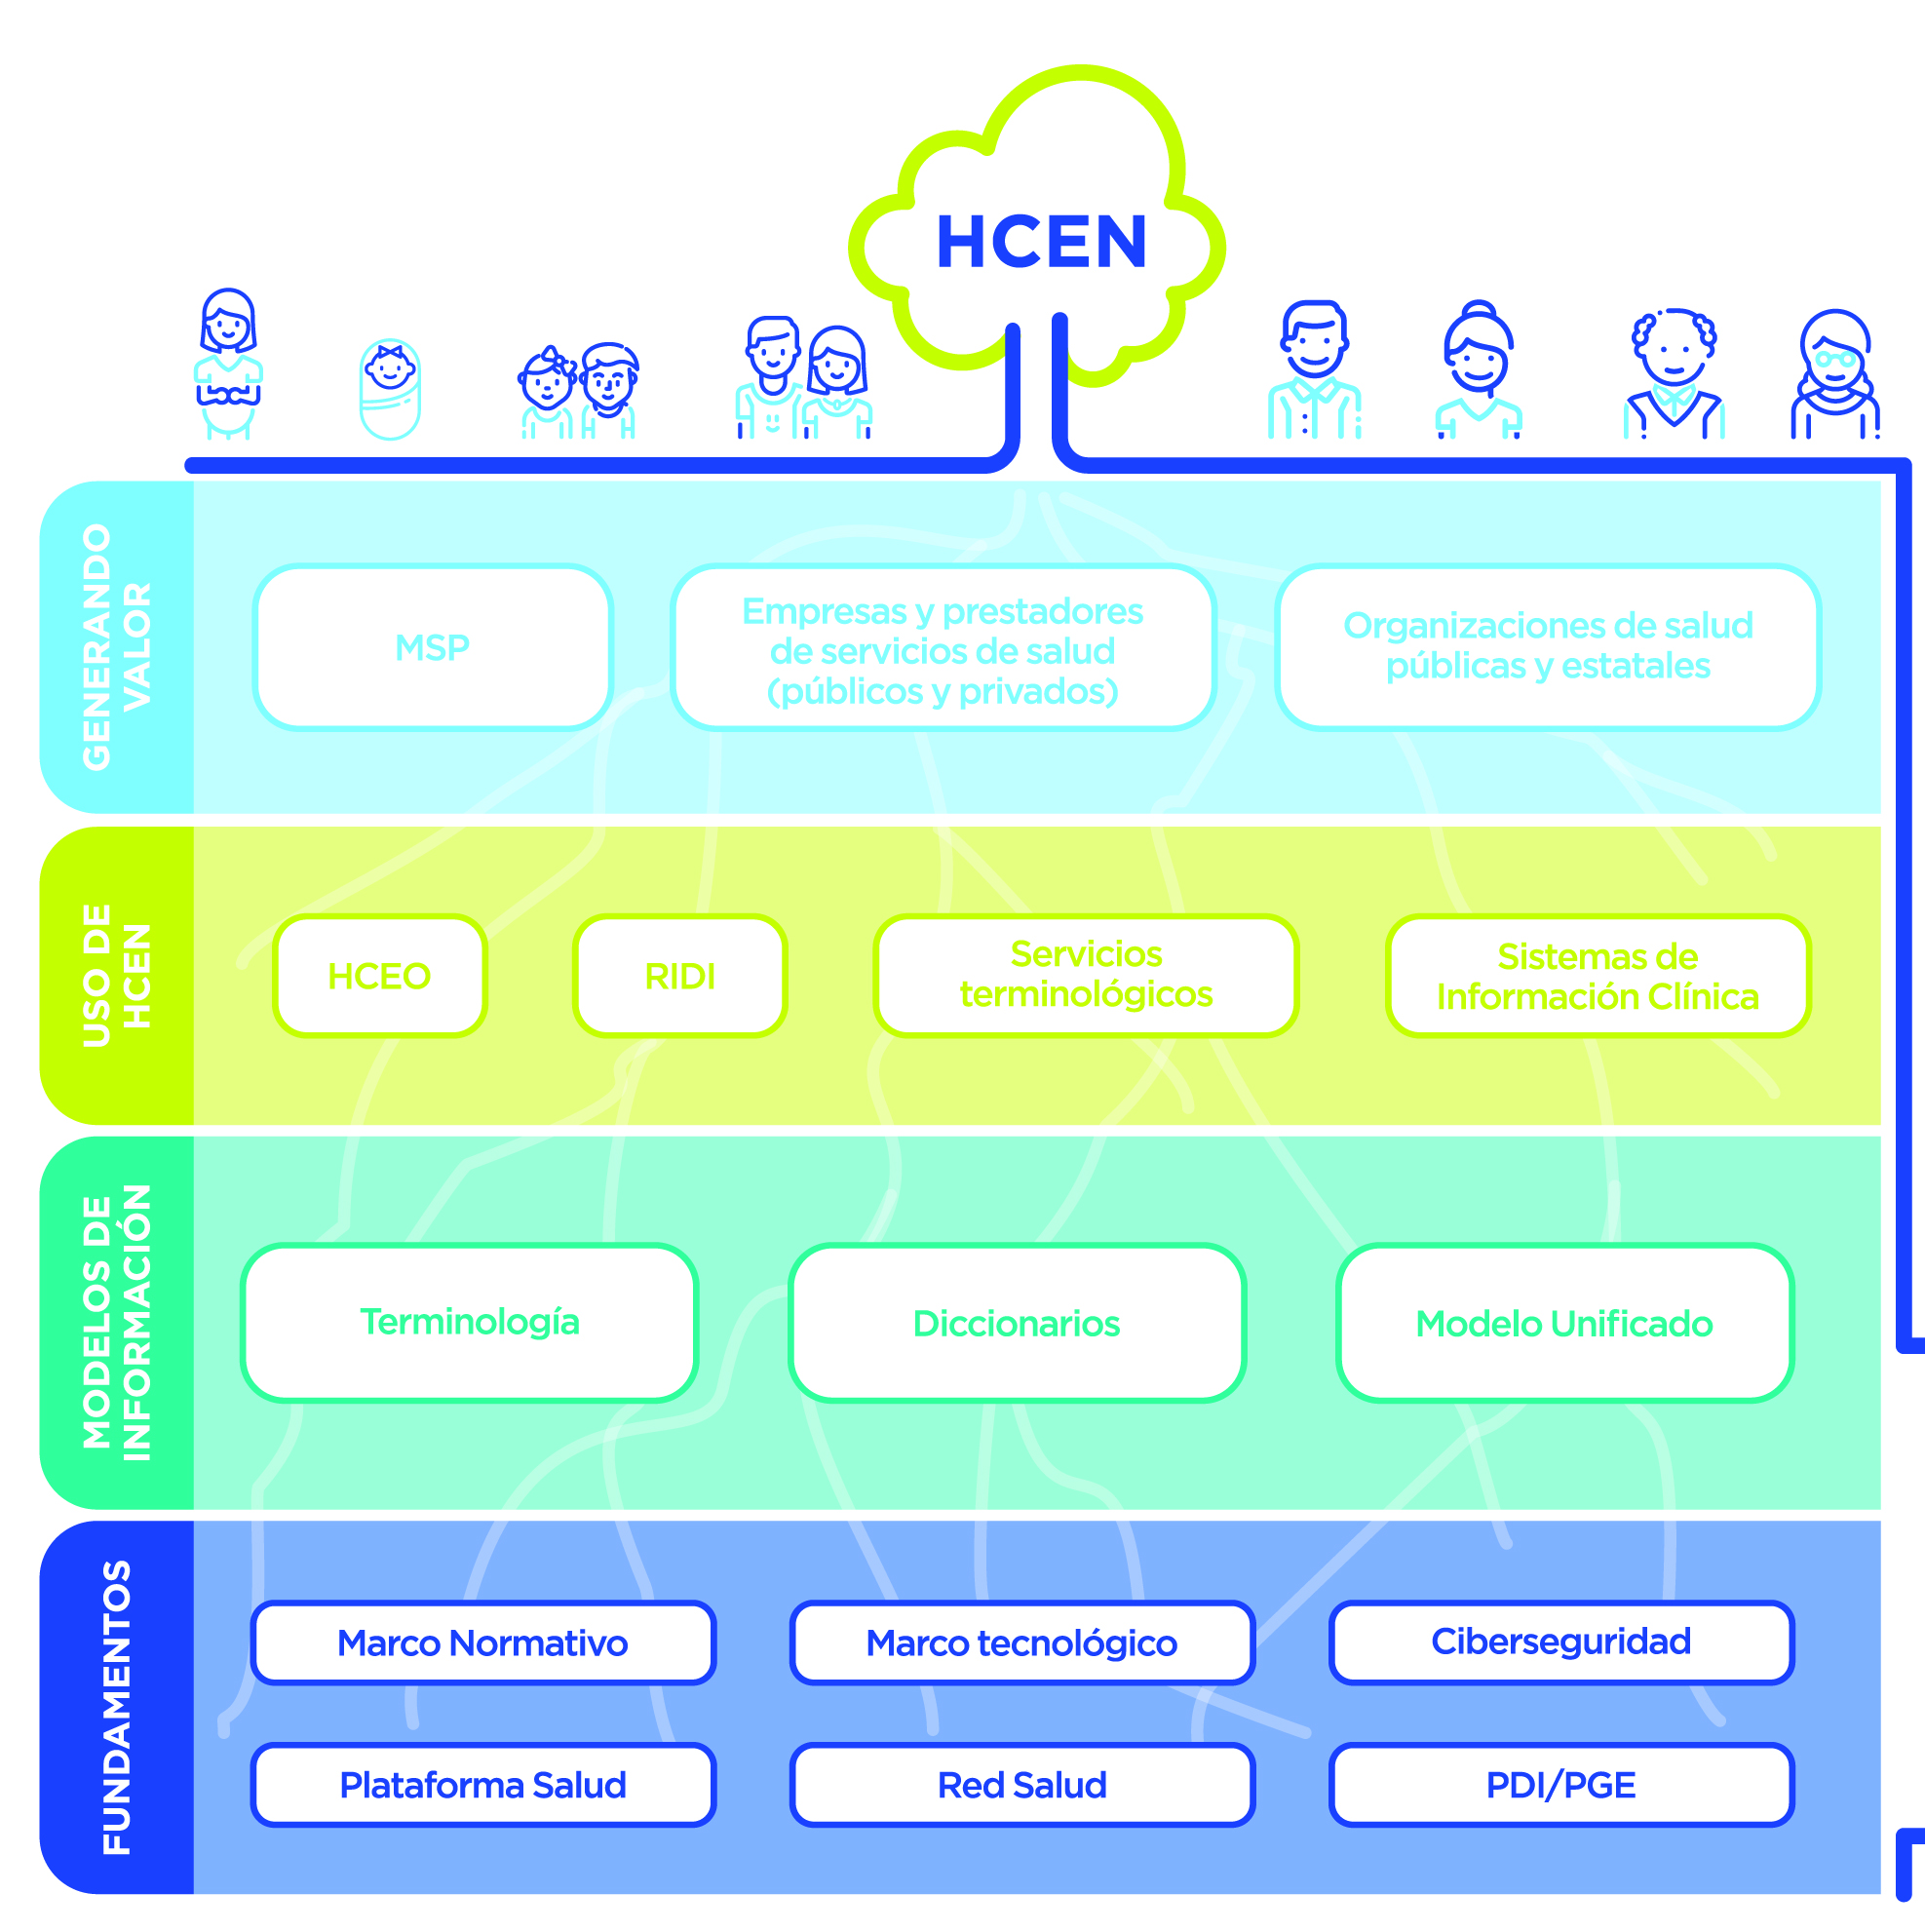 El diagrama de HCEN muestra cuatro niveles de integración para el funcionamiento de la plataforma nacional. Presenta en su nivel inferior una capa de Fundamentos conceptuales relacionados con los elementos que resultan necesarios para el funcionamiento y que permiten habilitar y utilizar la plataforma. Esta integrada por el marco normativo, el marco tecnológico, los temas de ciberseguridad vinculados, la conexión a la red salud y la vinculación a la Plataforma de Gobierno Electrónico (PGE). En el segundo nivel, Modelos de Información, se integran los modelos de información relacionados con la Terminología, los Diccionarios necesarios para la codificaciones de enfermedades, medicamentos, profesiones, entre otros, y las hojas del Conjunto Mínimo de datos (CMD) que contienen el modelo unificado de HCEN. El tercer, Uso de HCEN, nivel incluye el desarrollo de las aplicaciones verticales relacionadas a una disciplina en concreto, por ejemplo imagenologia (RIDI) o una enfermedad como por ejemplo la Historia Clínica Electrónica Ontológica (HCEO), los servicios terminológicos y los sistemas de información clínica. En la ultima capa, se refiere al valor agregado (Generando Valor) y la posibilidad de generar valor desde la información para los temas de vigilancia sanitaria y epidemiologica del MSP, información para prestadores de salud públicos y privados y organizaciones de salud publicas y estatales.